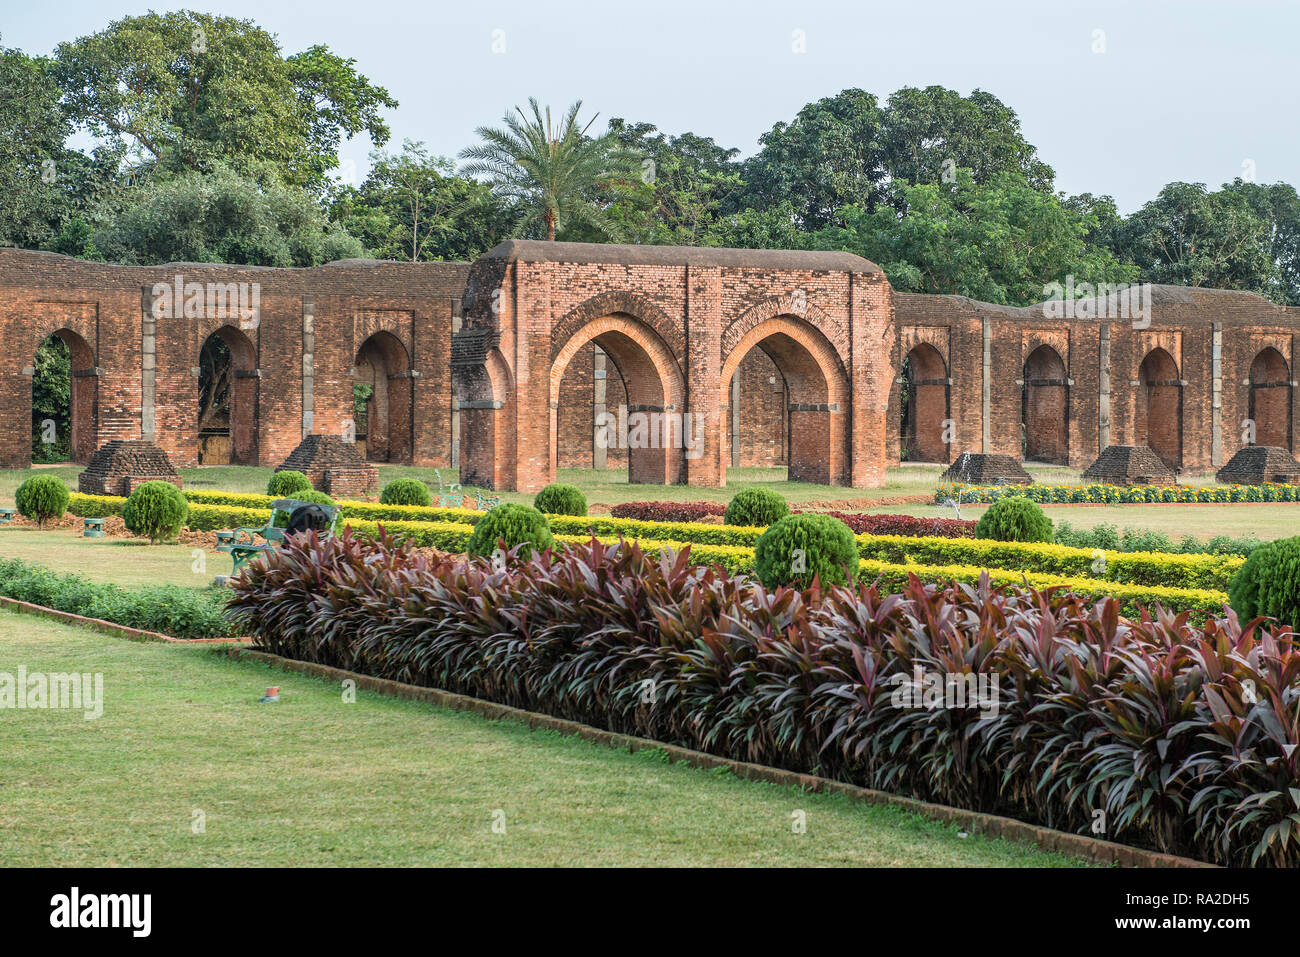 PANDUA, Bengale occidental, Inde - l'Adina mosquée, la plus grande mosquée du sous-continent indien, a été construit au cours du 14 siècle. Banque D'Images